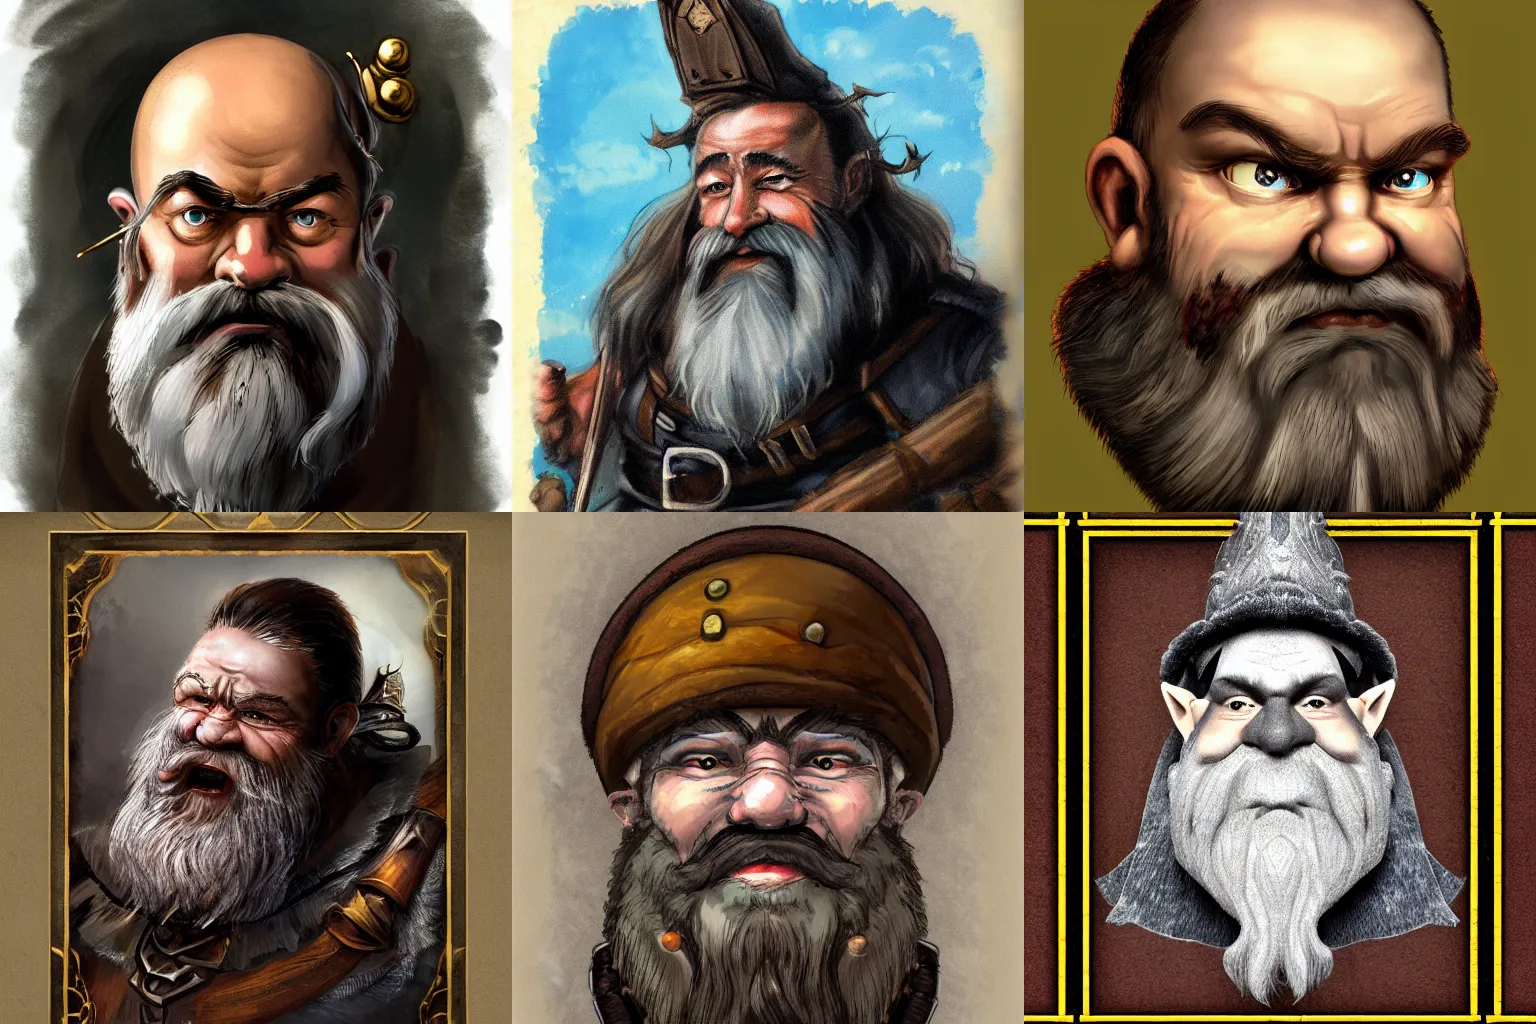 Prompt: fantasy dwarf, monocle, portrait